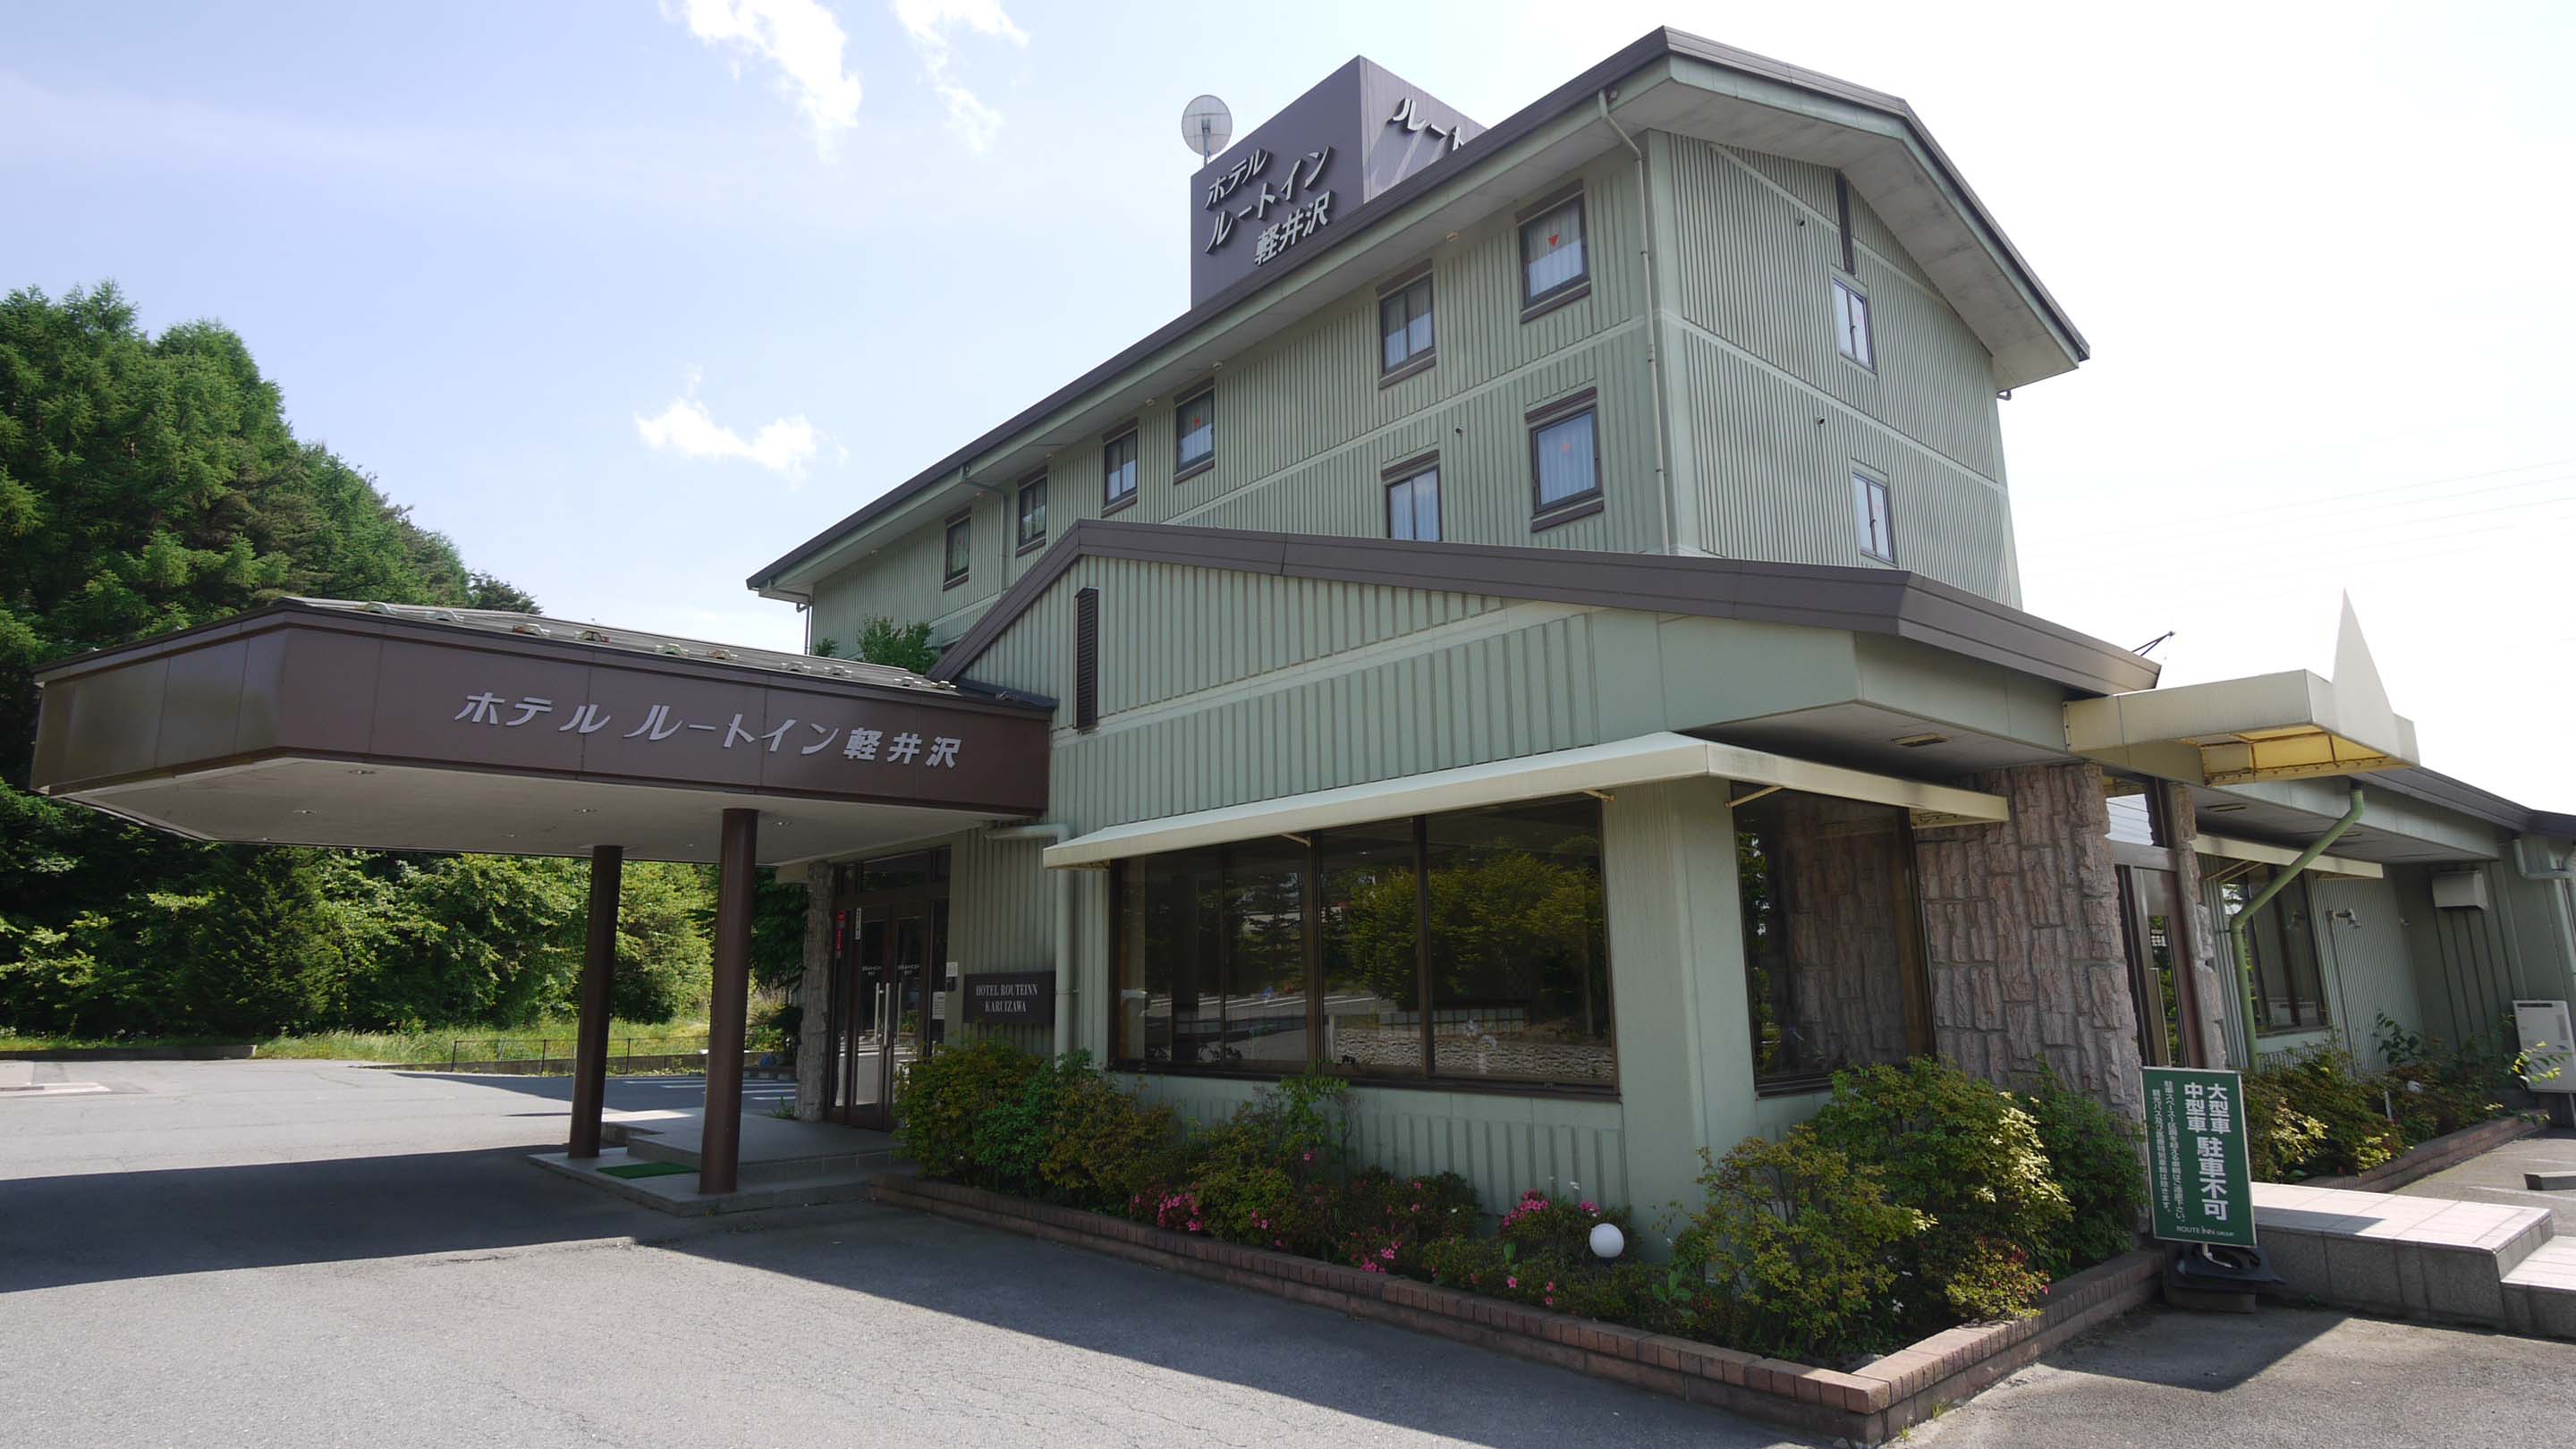 輕井澤 Route-Inn Court 飯店